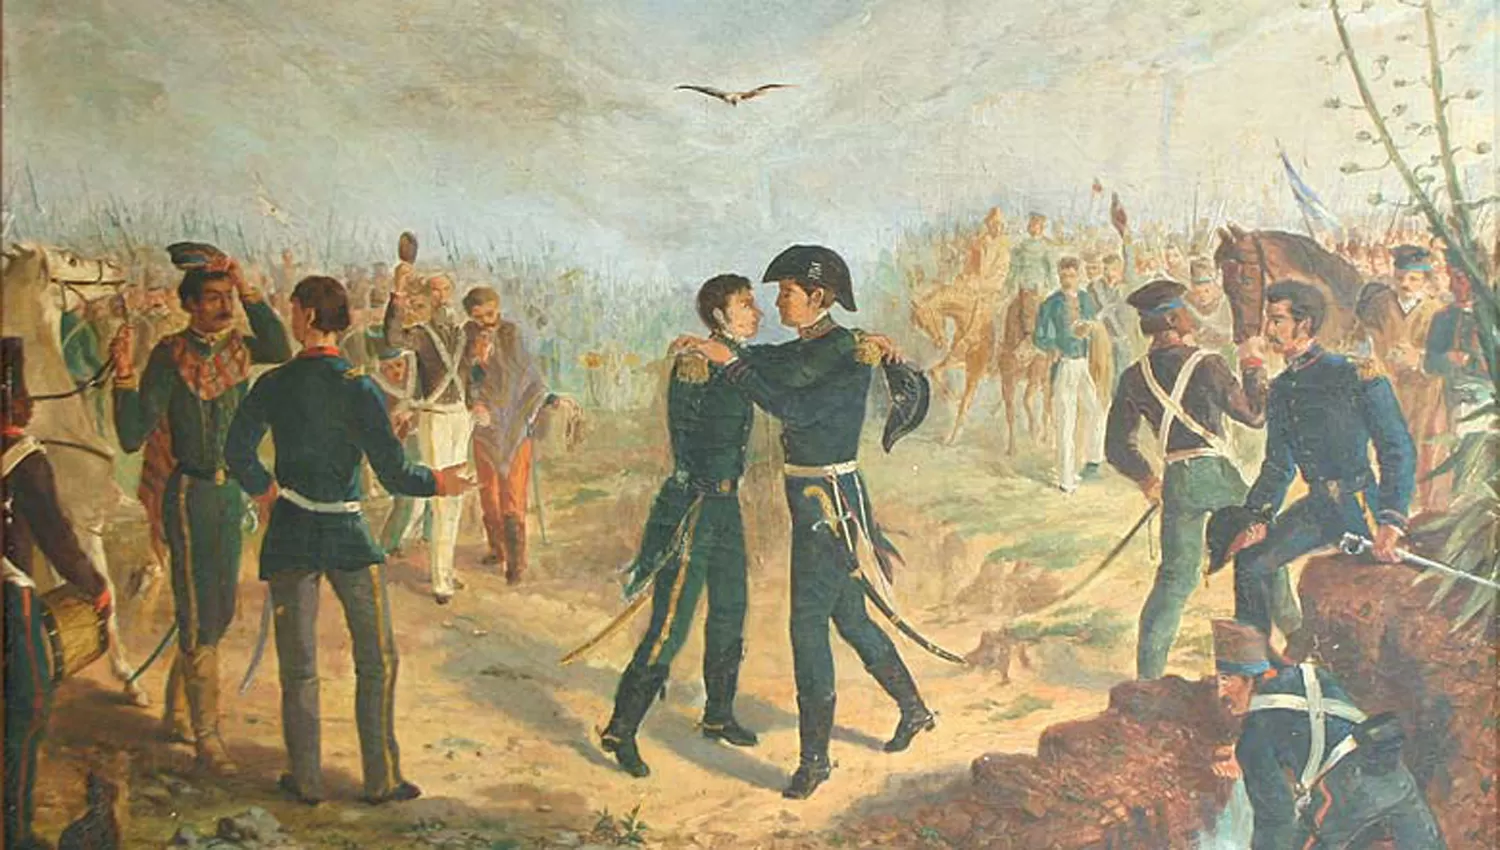 Encuentro de San Martín y Belgrano en la Posta de Yatasto, óleo de Augusto Ballerini (1875). Instituto Nacional Sanmartiniano, Buenos Aires.